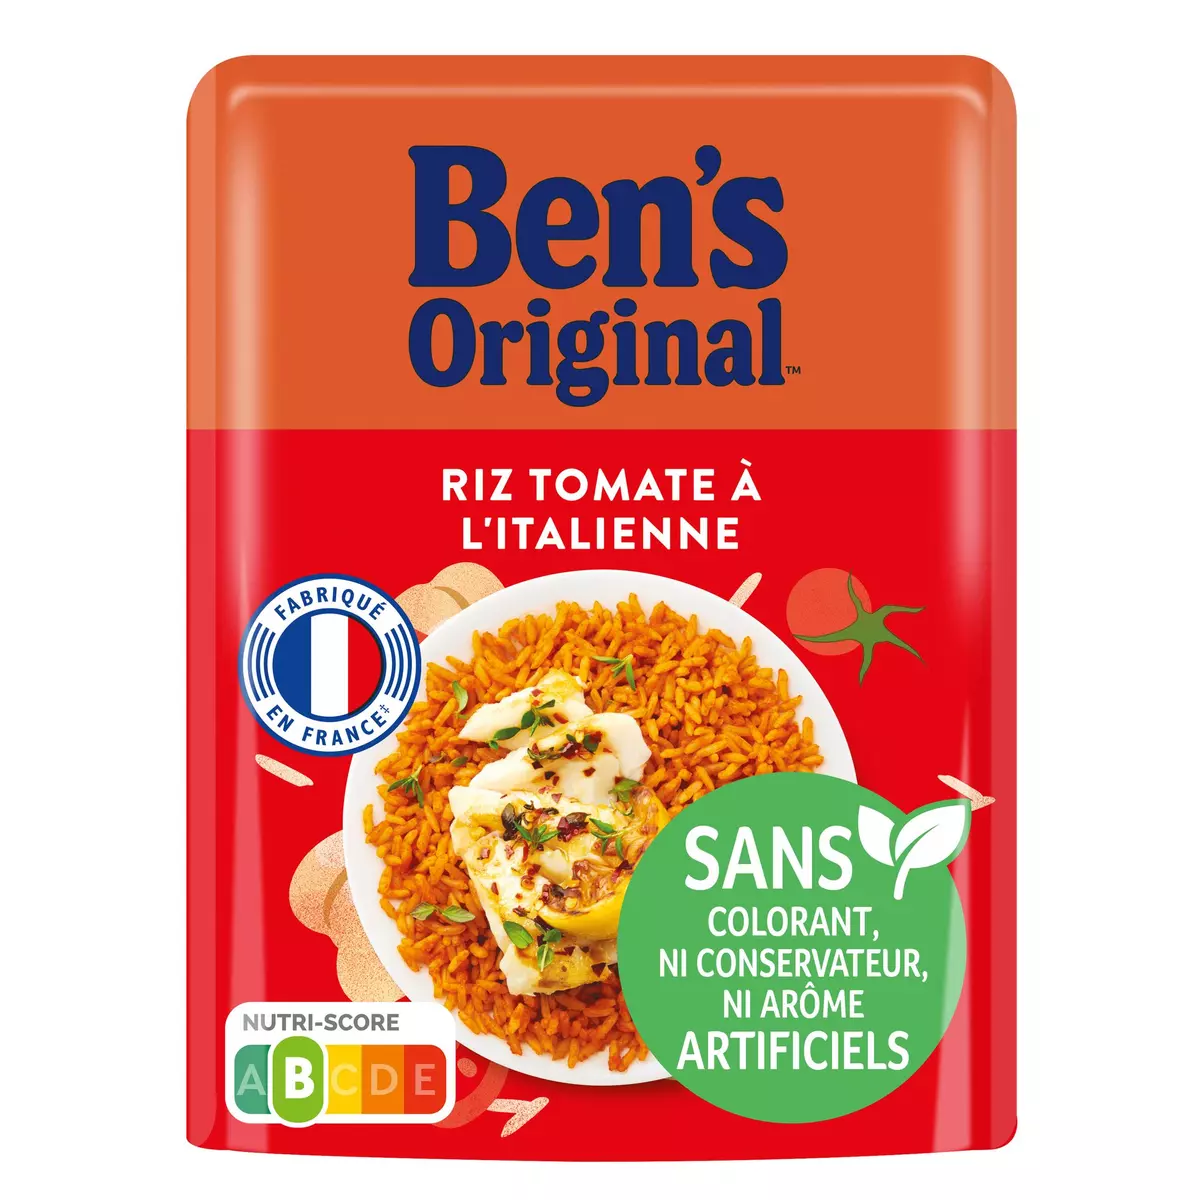 BEN'S ORIGINAL Riz tomate à l'italienne sachet express 1 personne